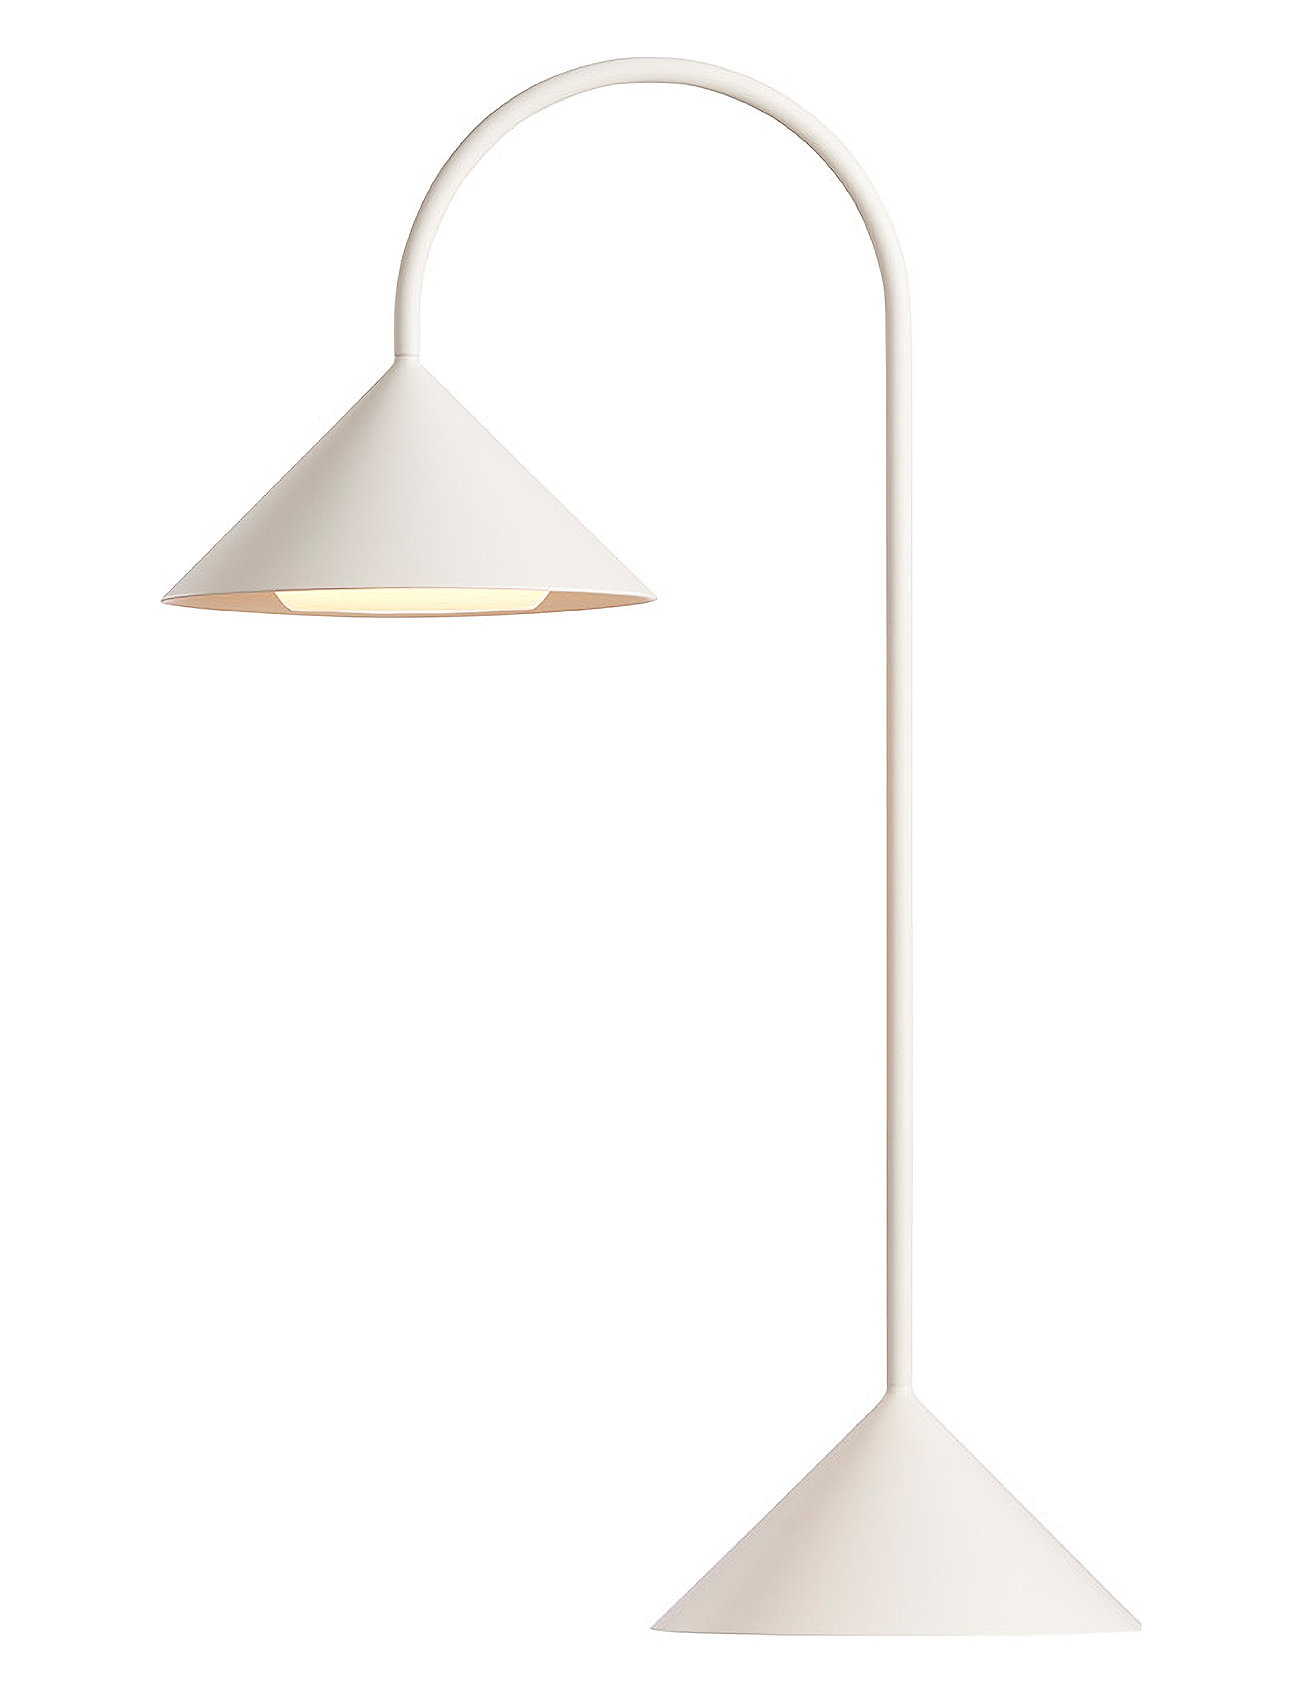 Grasp Portable H47 Home Lighting Lamps Table Lamps White Frandsen Lighting